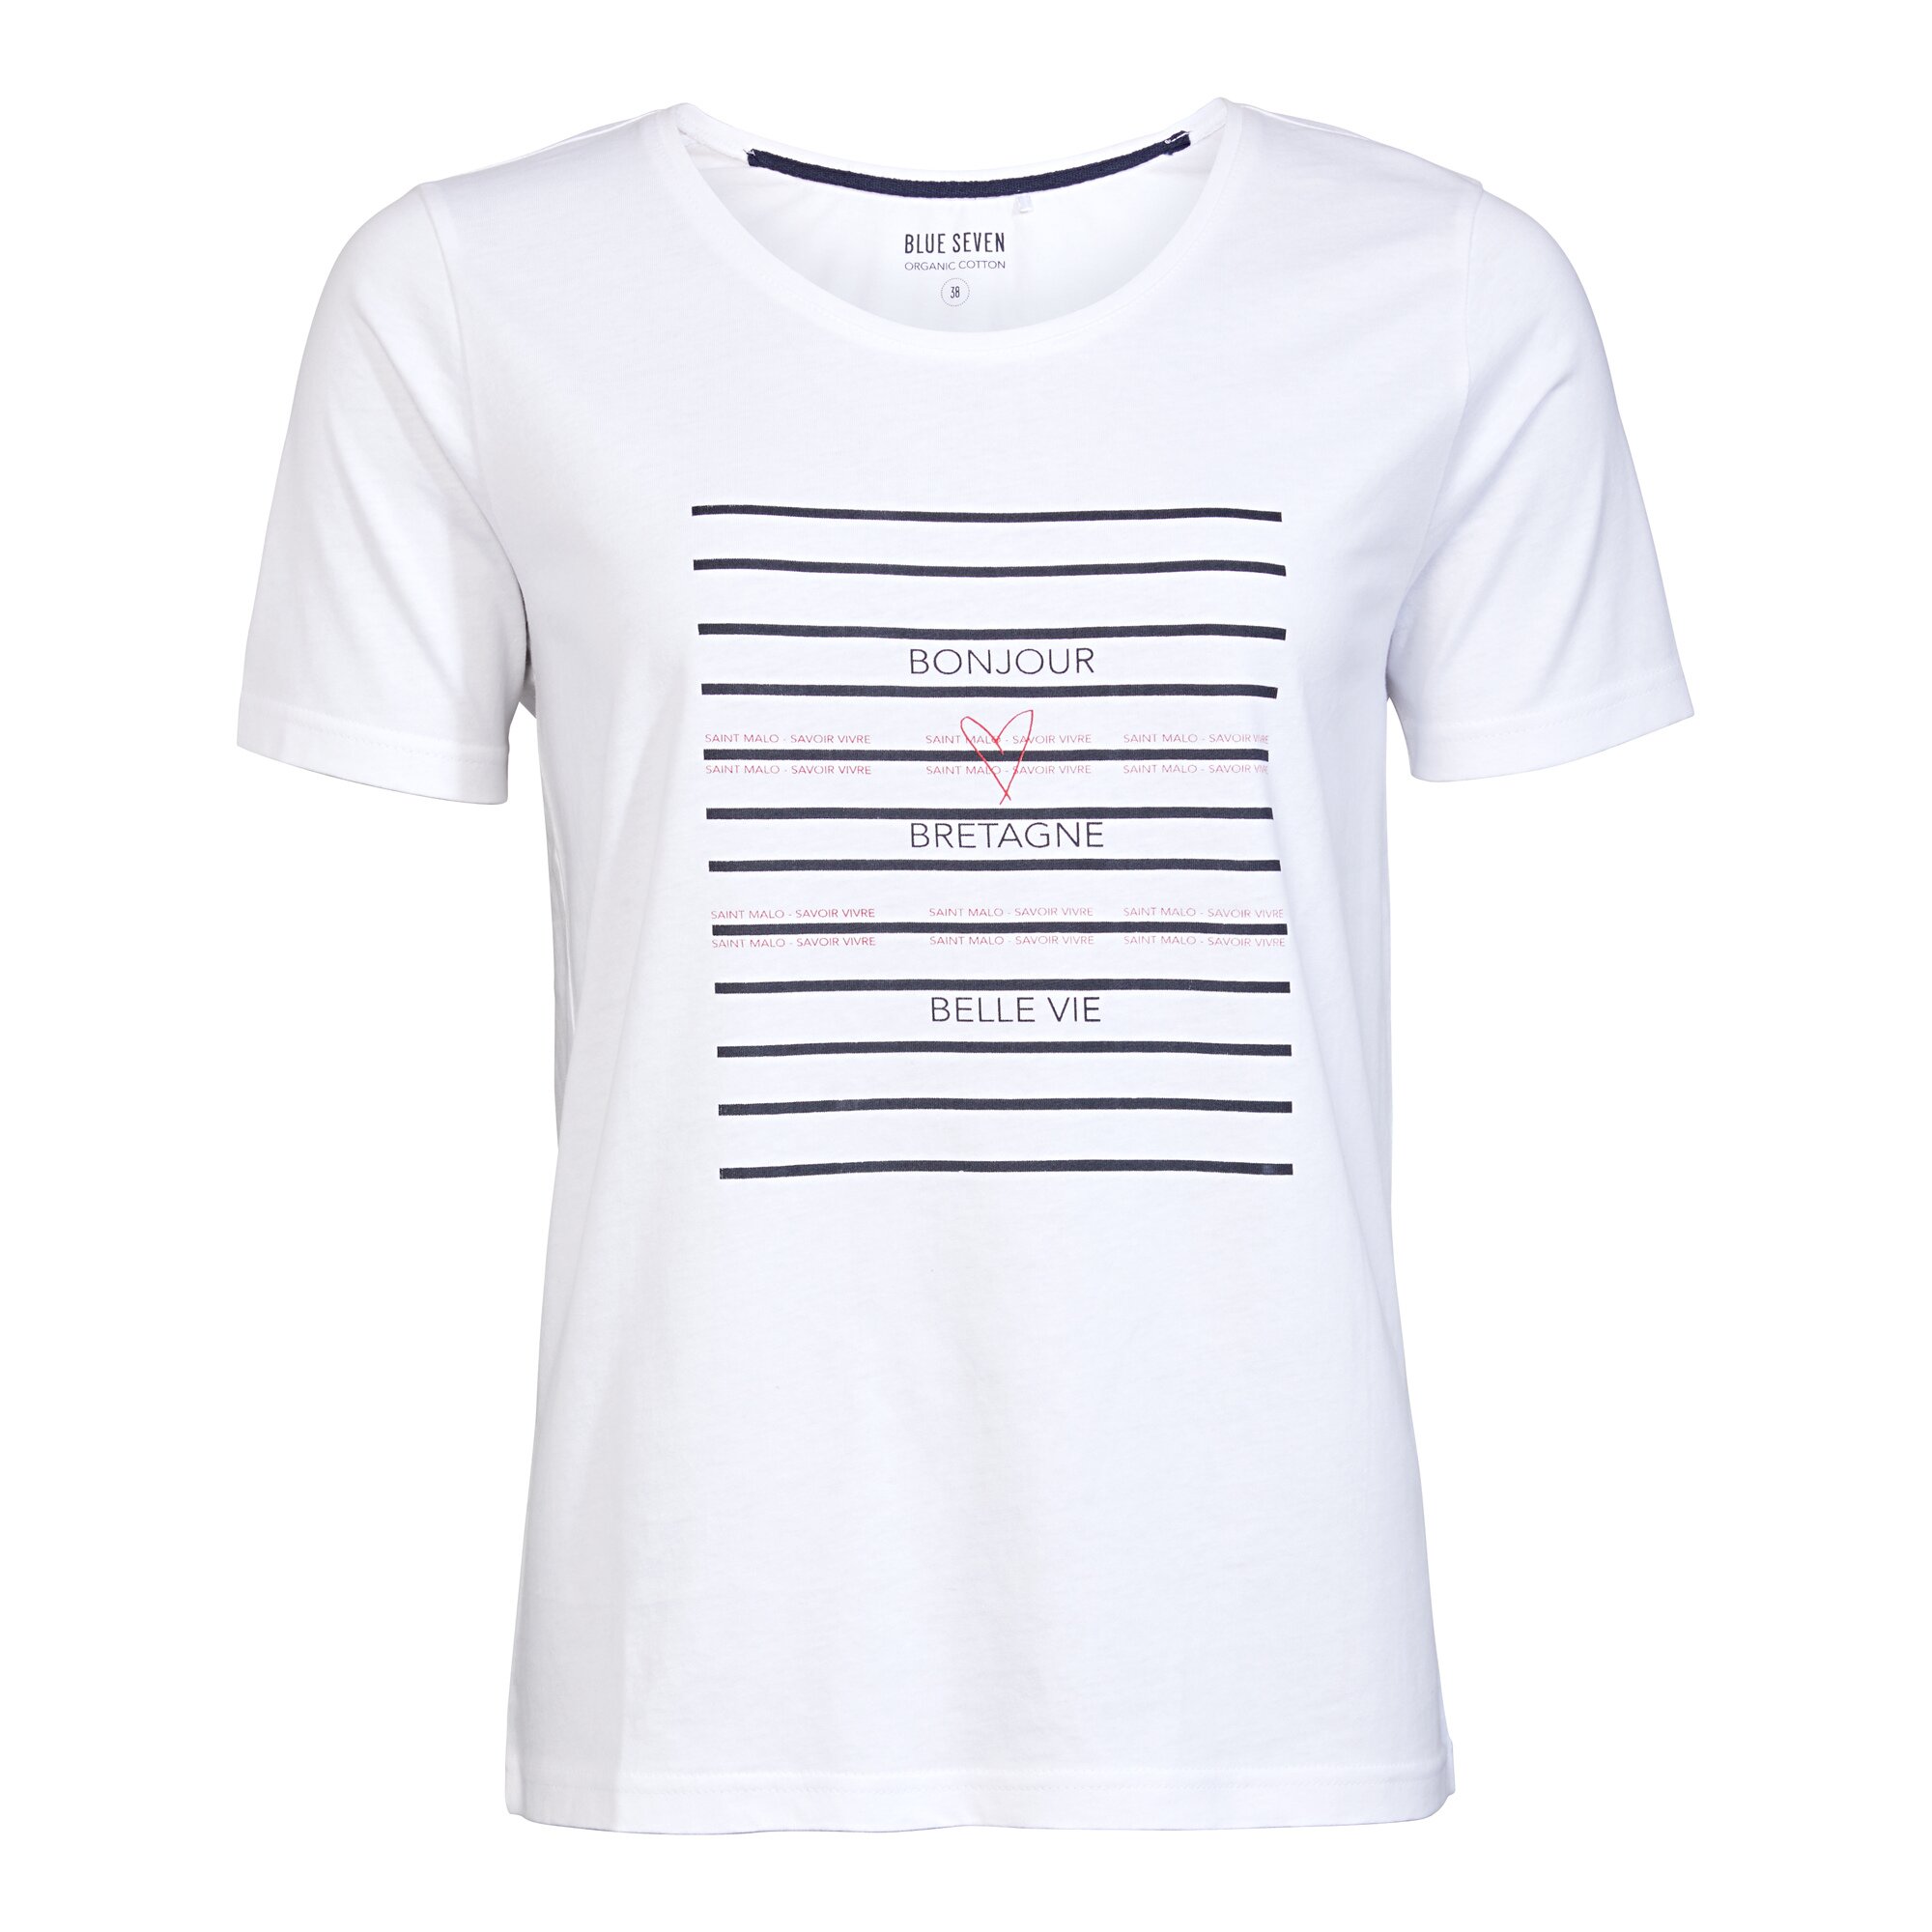 Image of Damen-T-Shirt "Saint Malo", Größe: 44, weiß